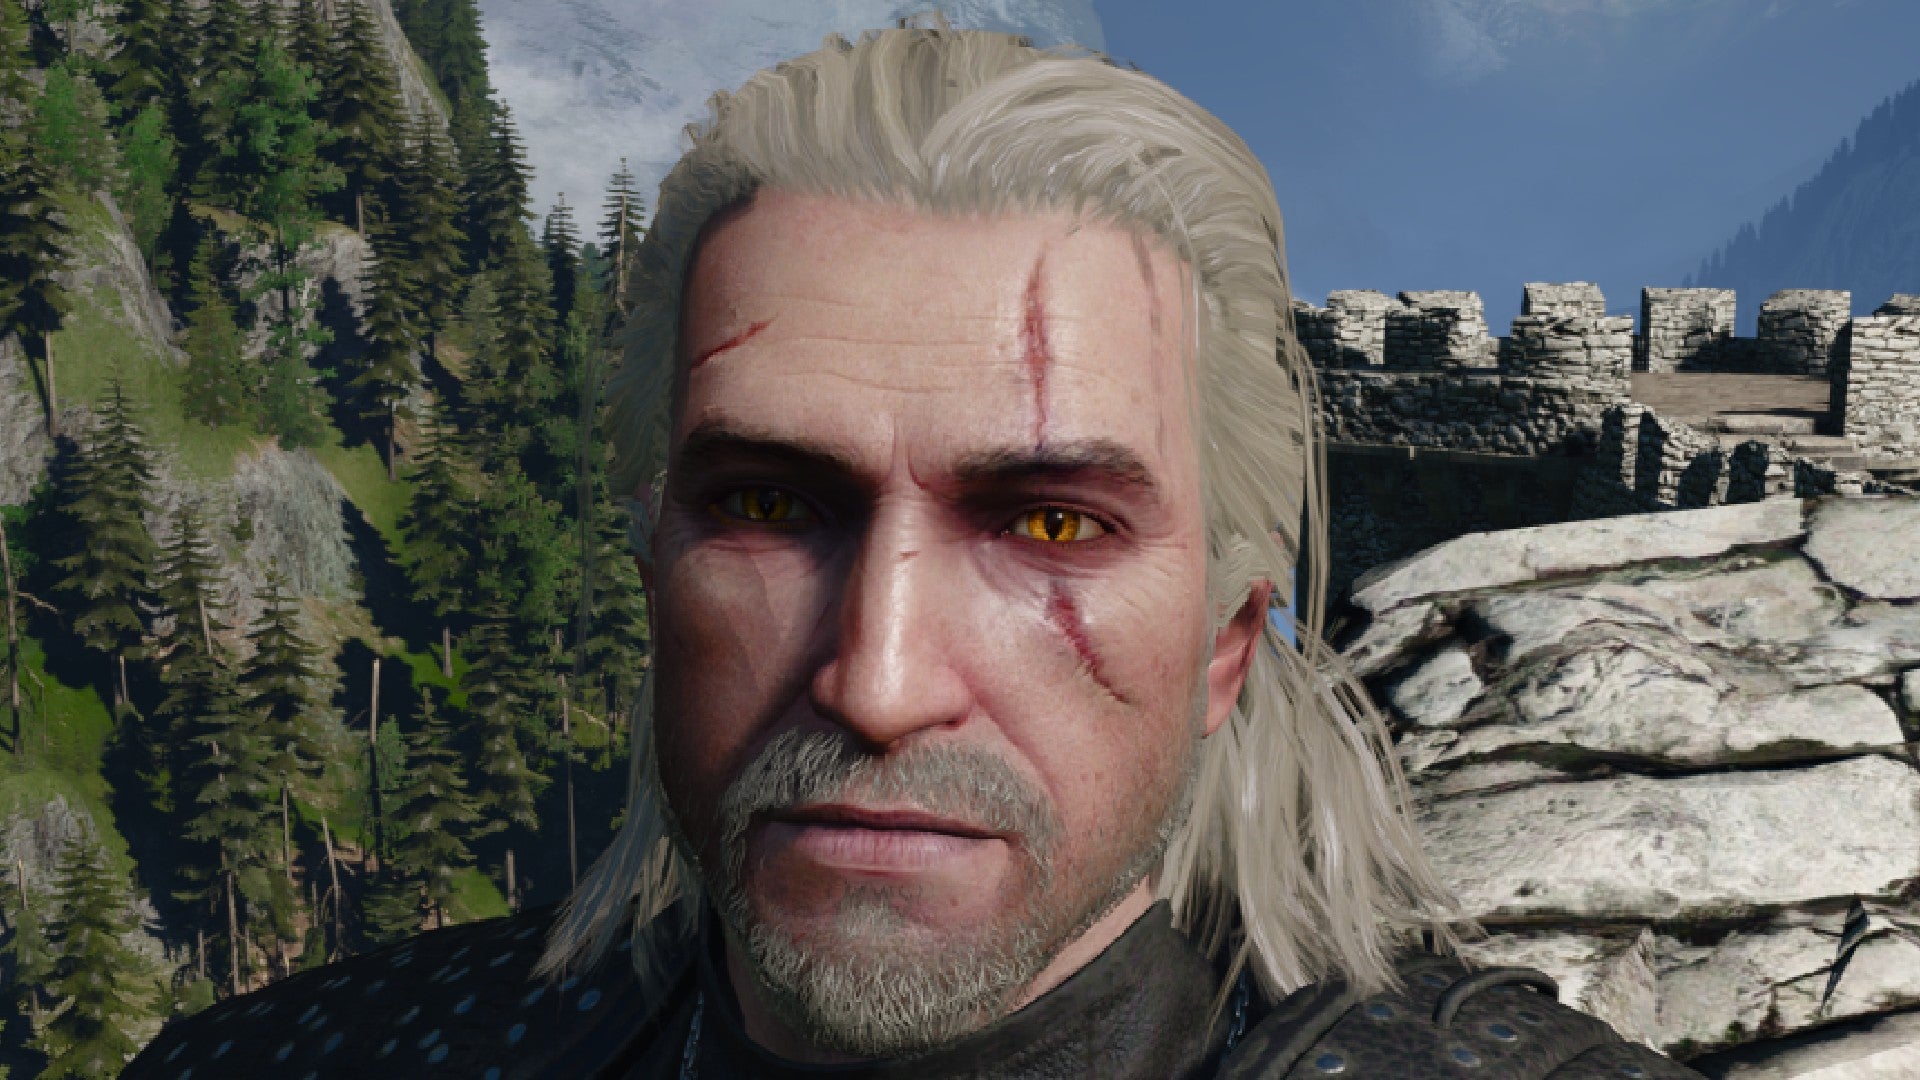 Imagen de Witcher 3 que muestra a Geralt con una barba prolija.